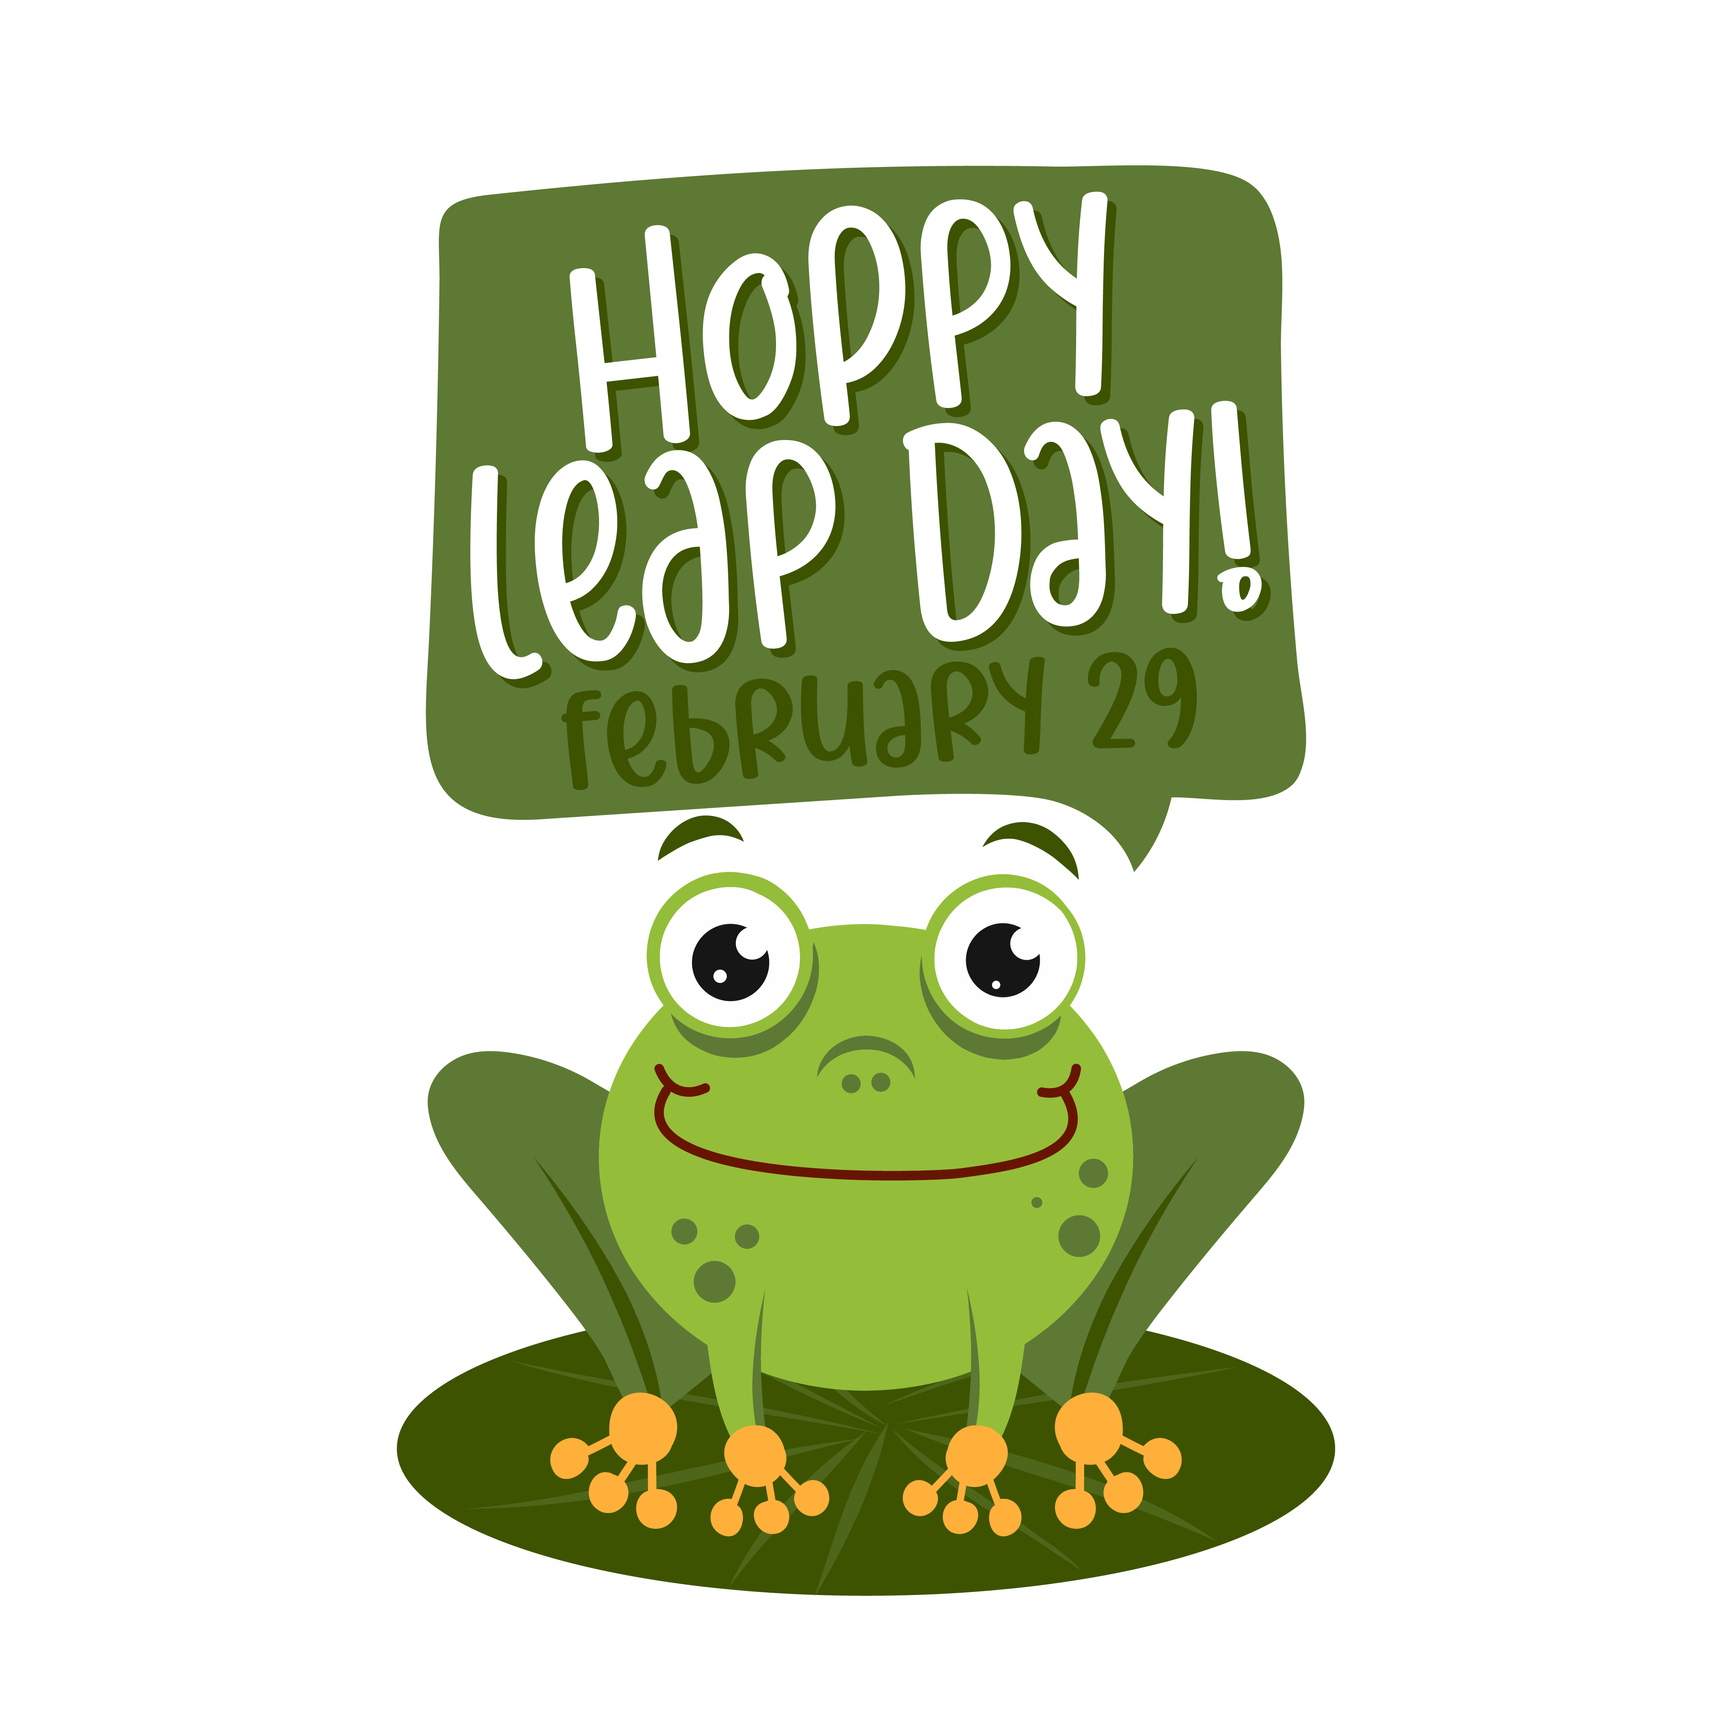 Hoppy Leap Day! February 29